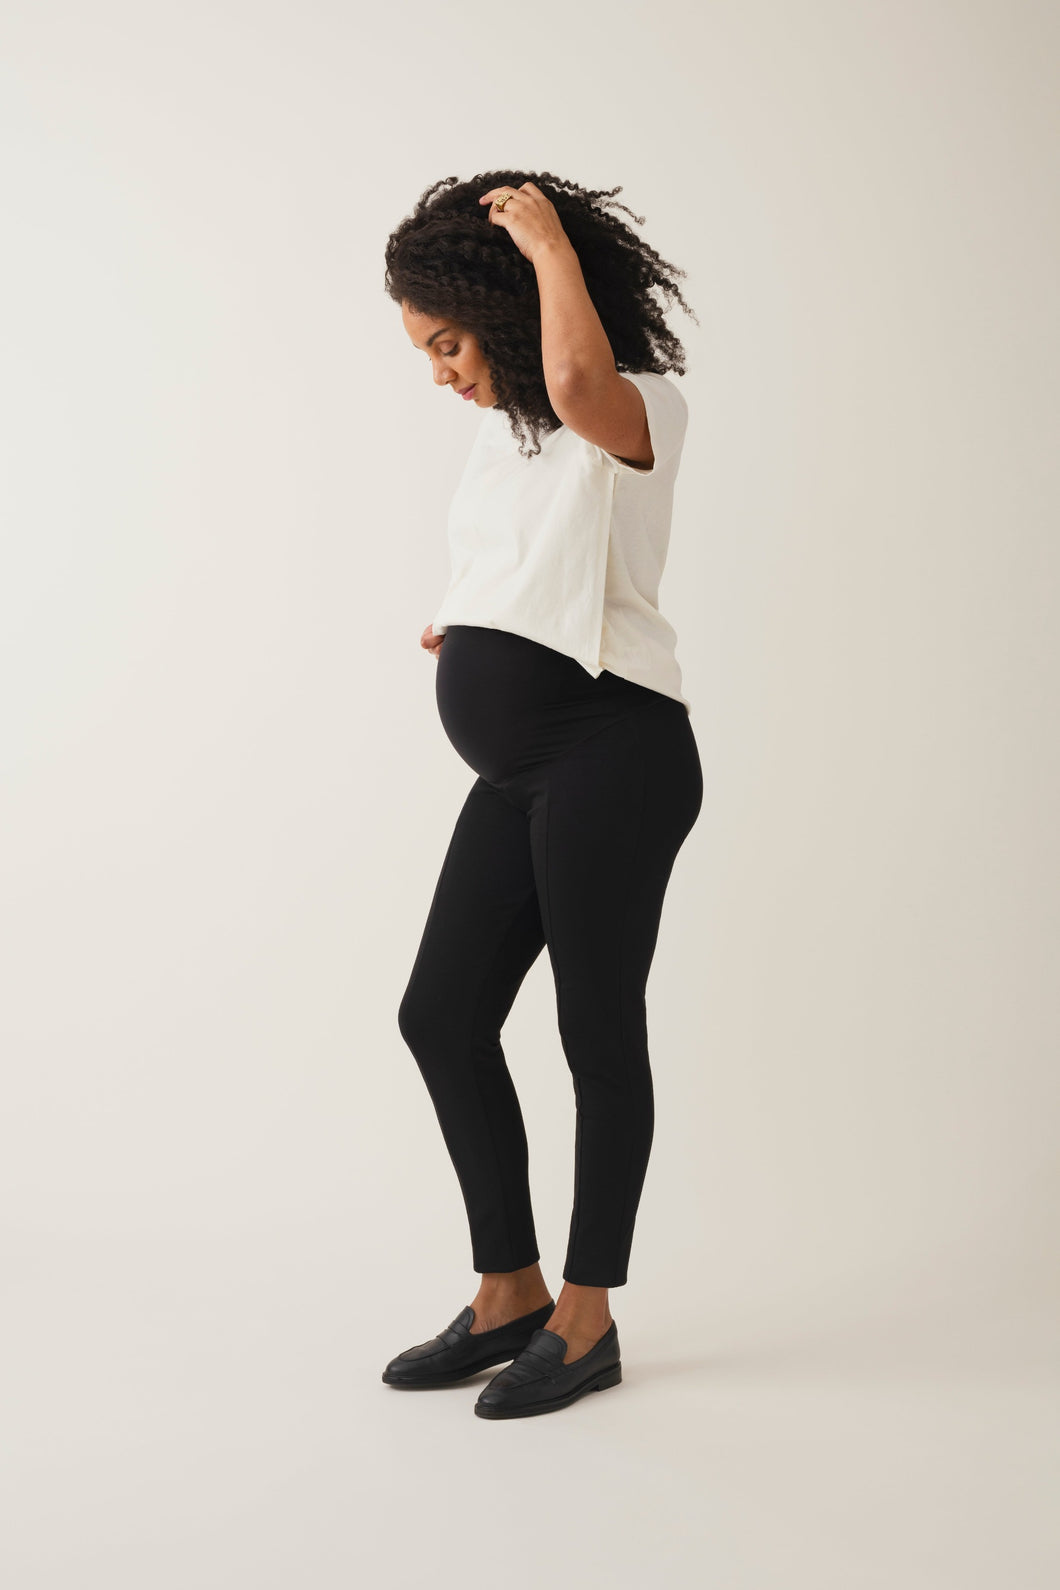 Boob Umstandshose leihen und online kaufen bei Mutterkleid, schwarz, knöchellang, mit nachhaltigem TENCEL™ Lyocell